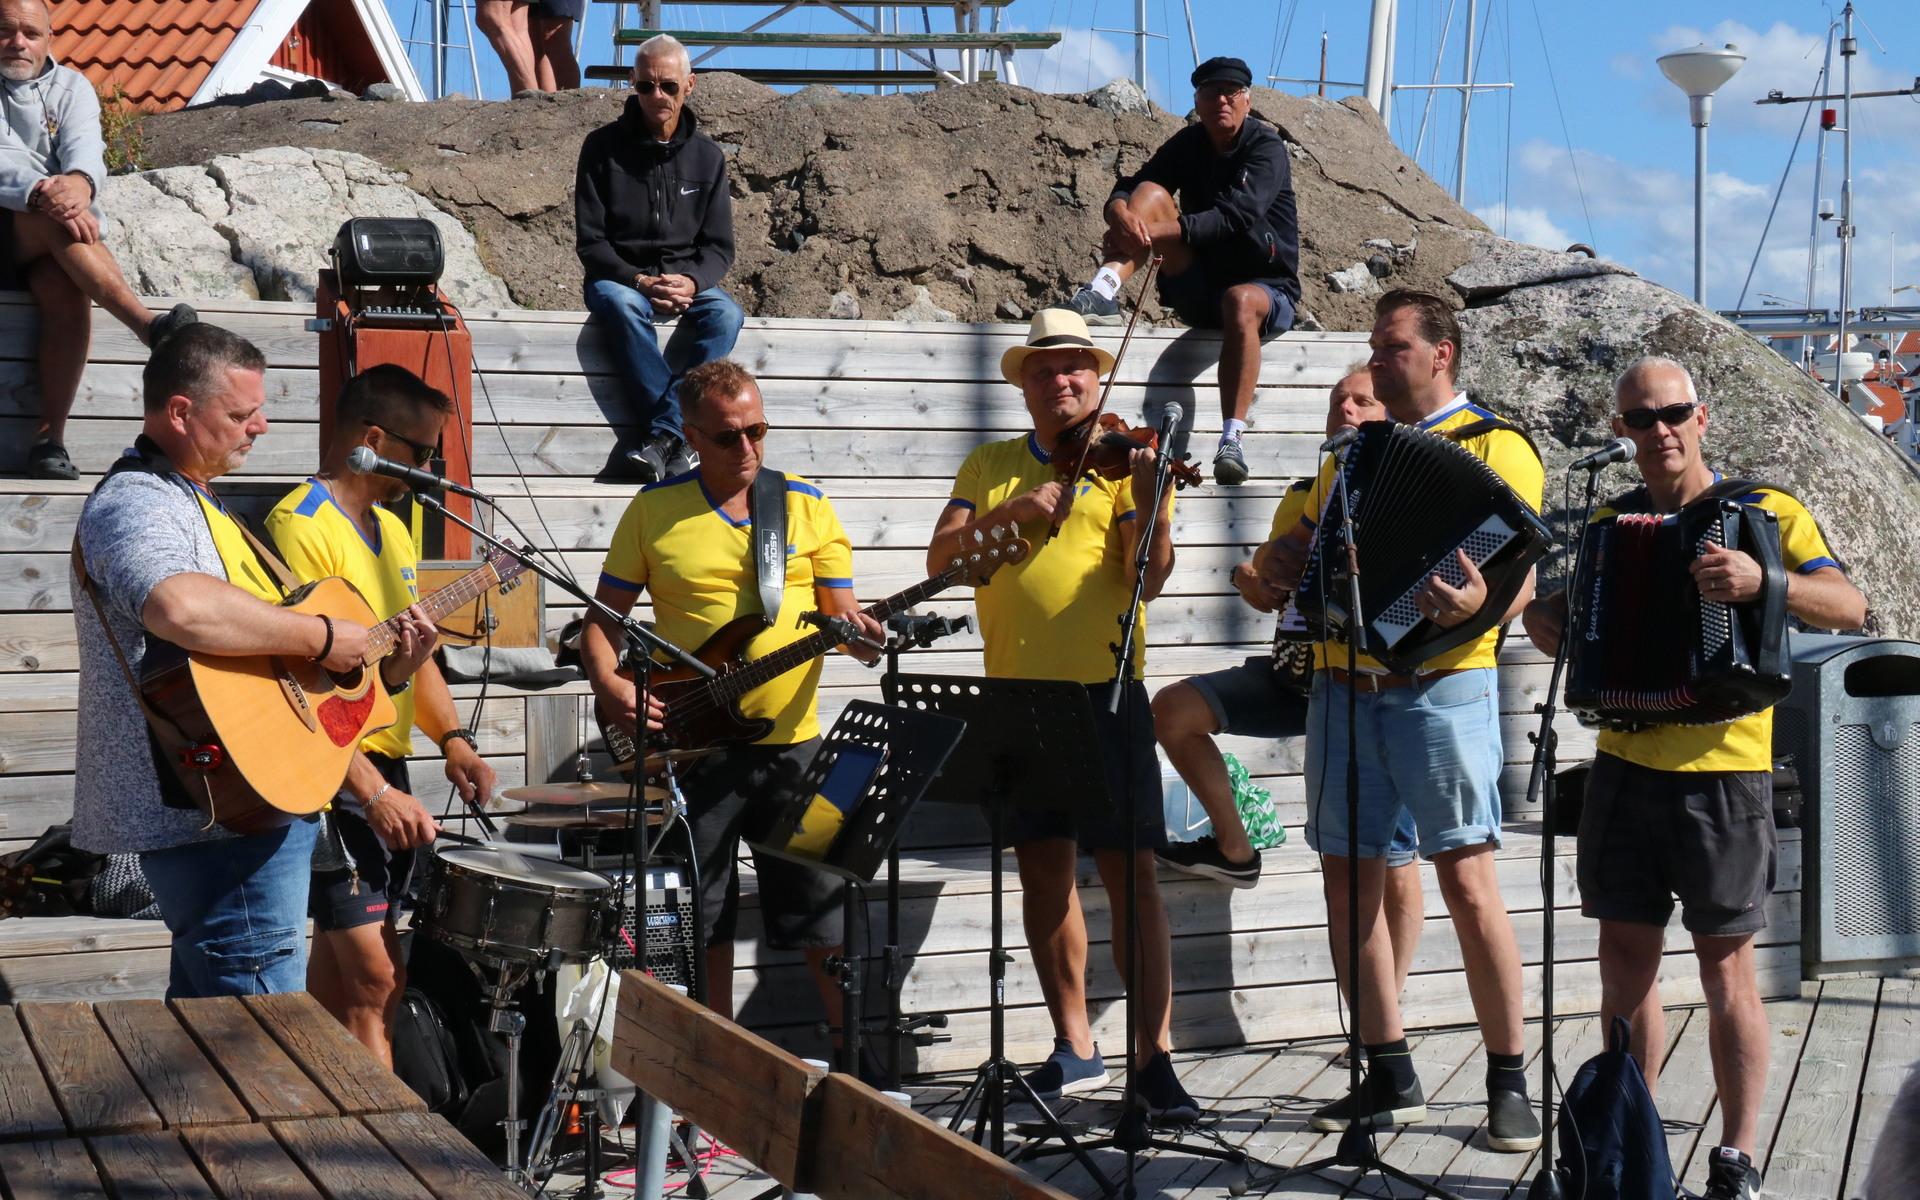 Bandet TräDattons underhöll med musik på bryggan. 